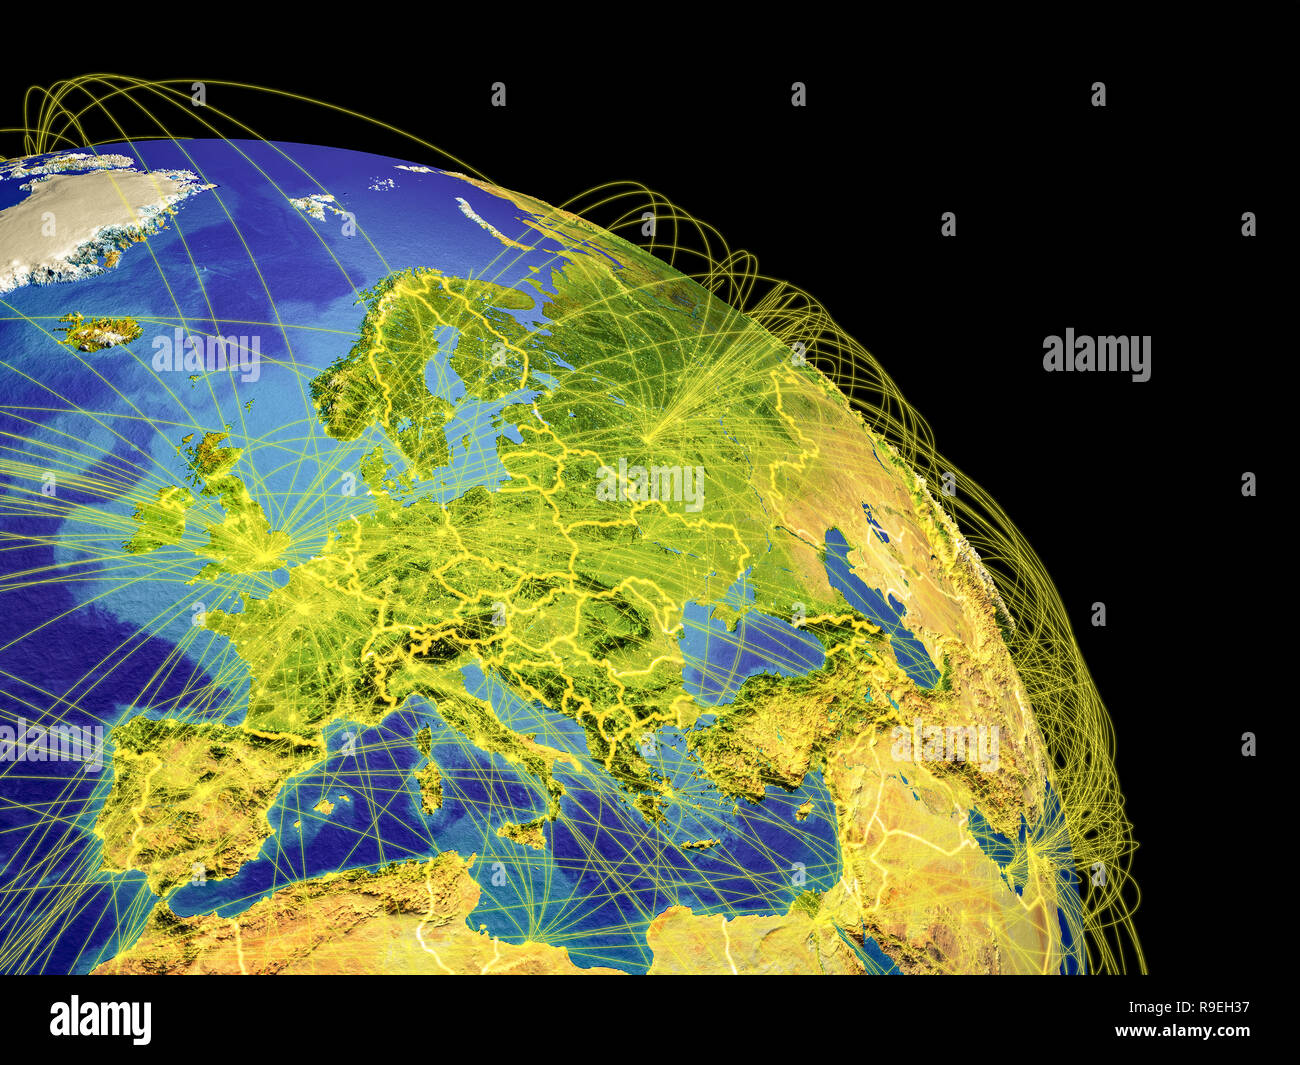 Europa aus weltraum -Fotos und -Bildmaterial in hoher Auflösung – Alamy